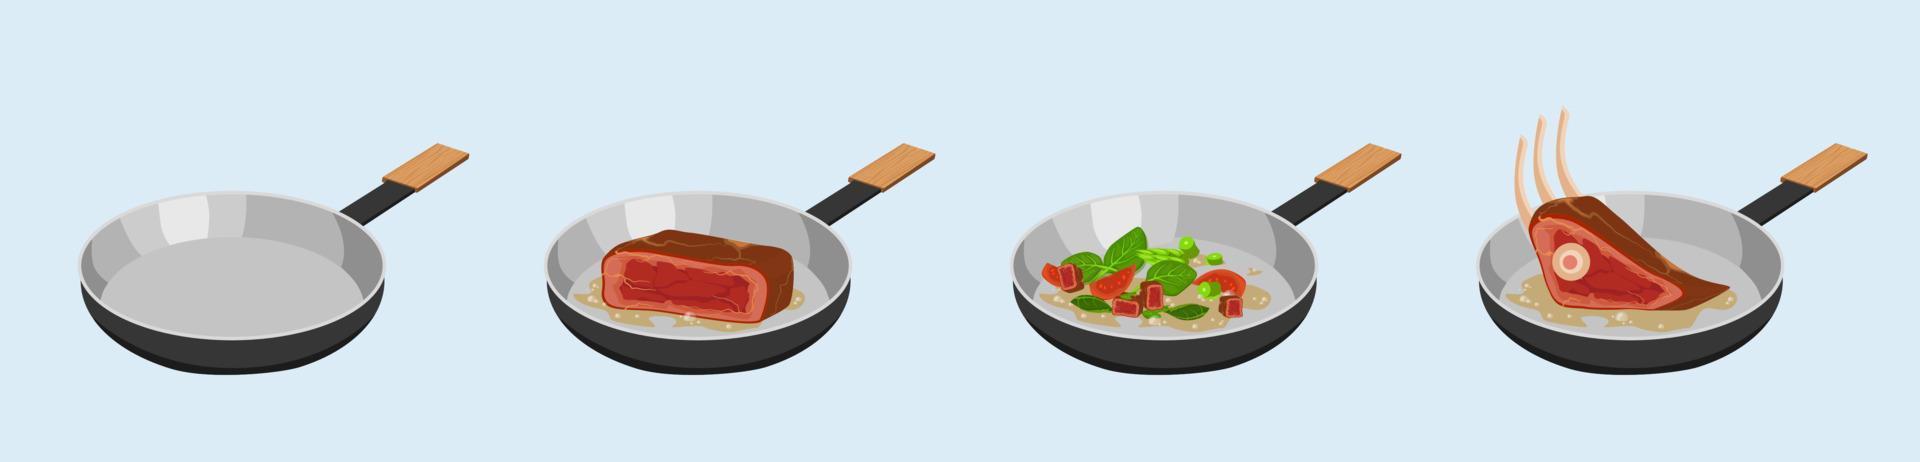 werkwijze van frituren vlees en groenten in koekepan. roeren gebakken bruin biefstuk en gebakken groen groente mengsel met vector peper.